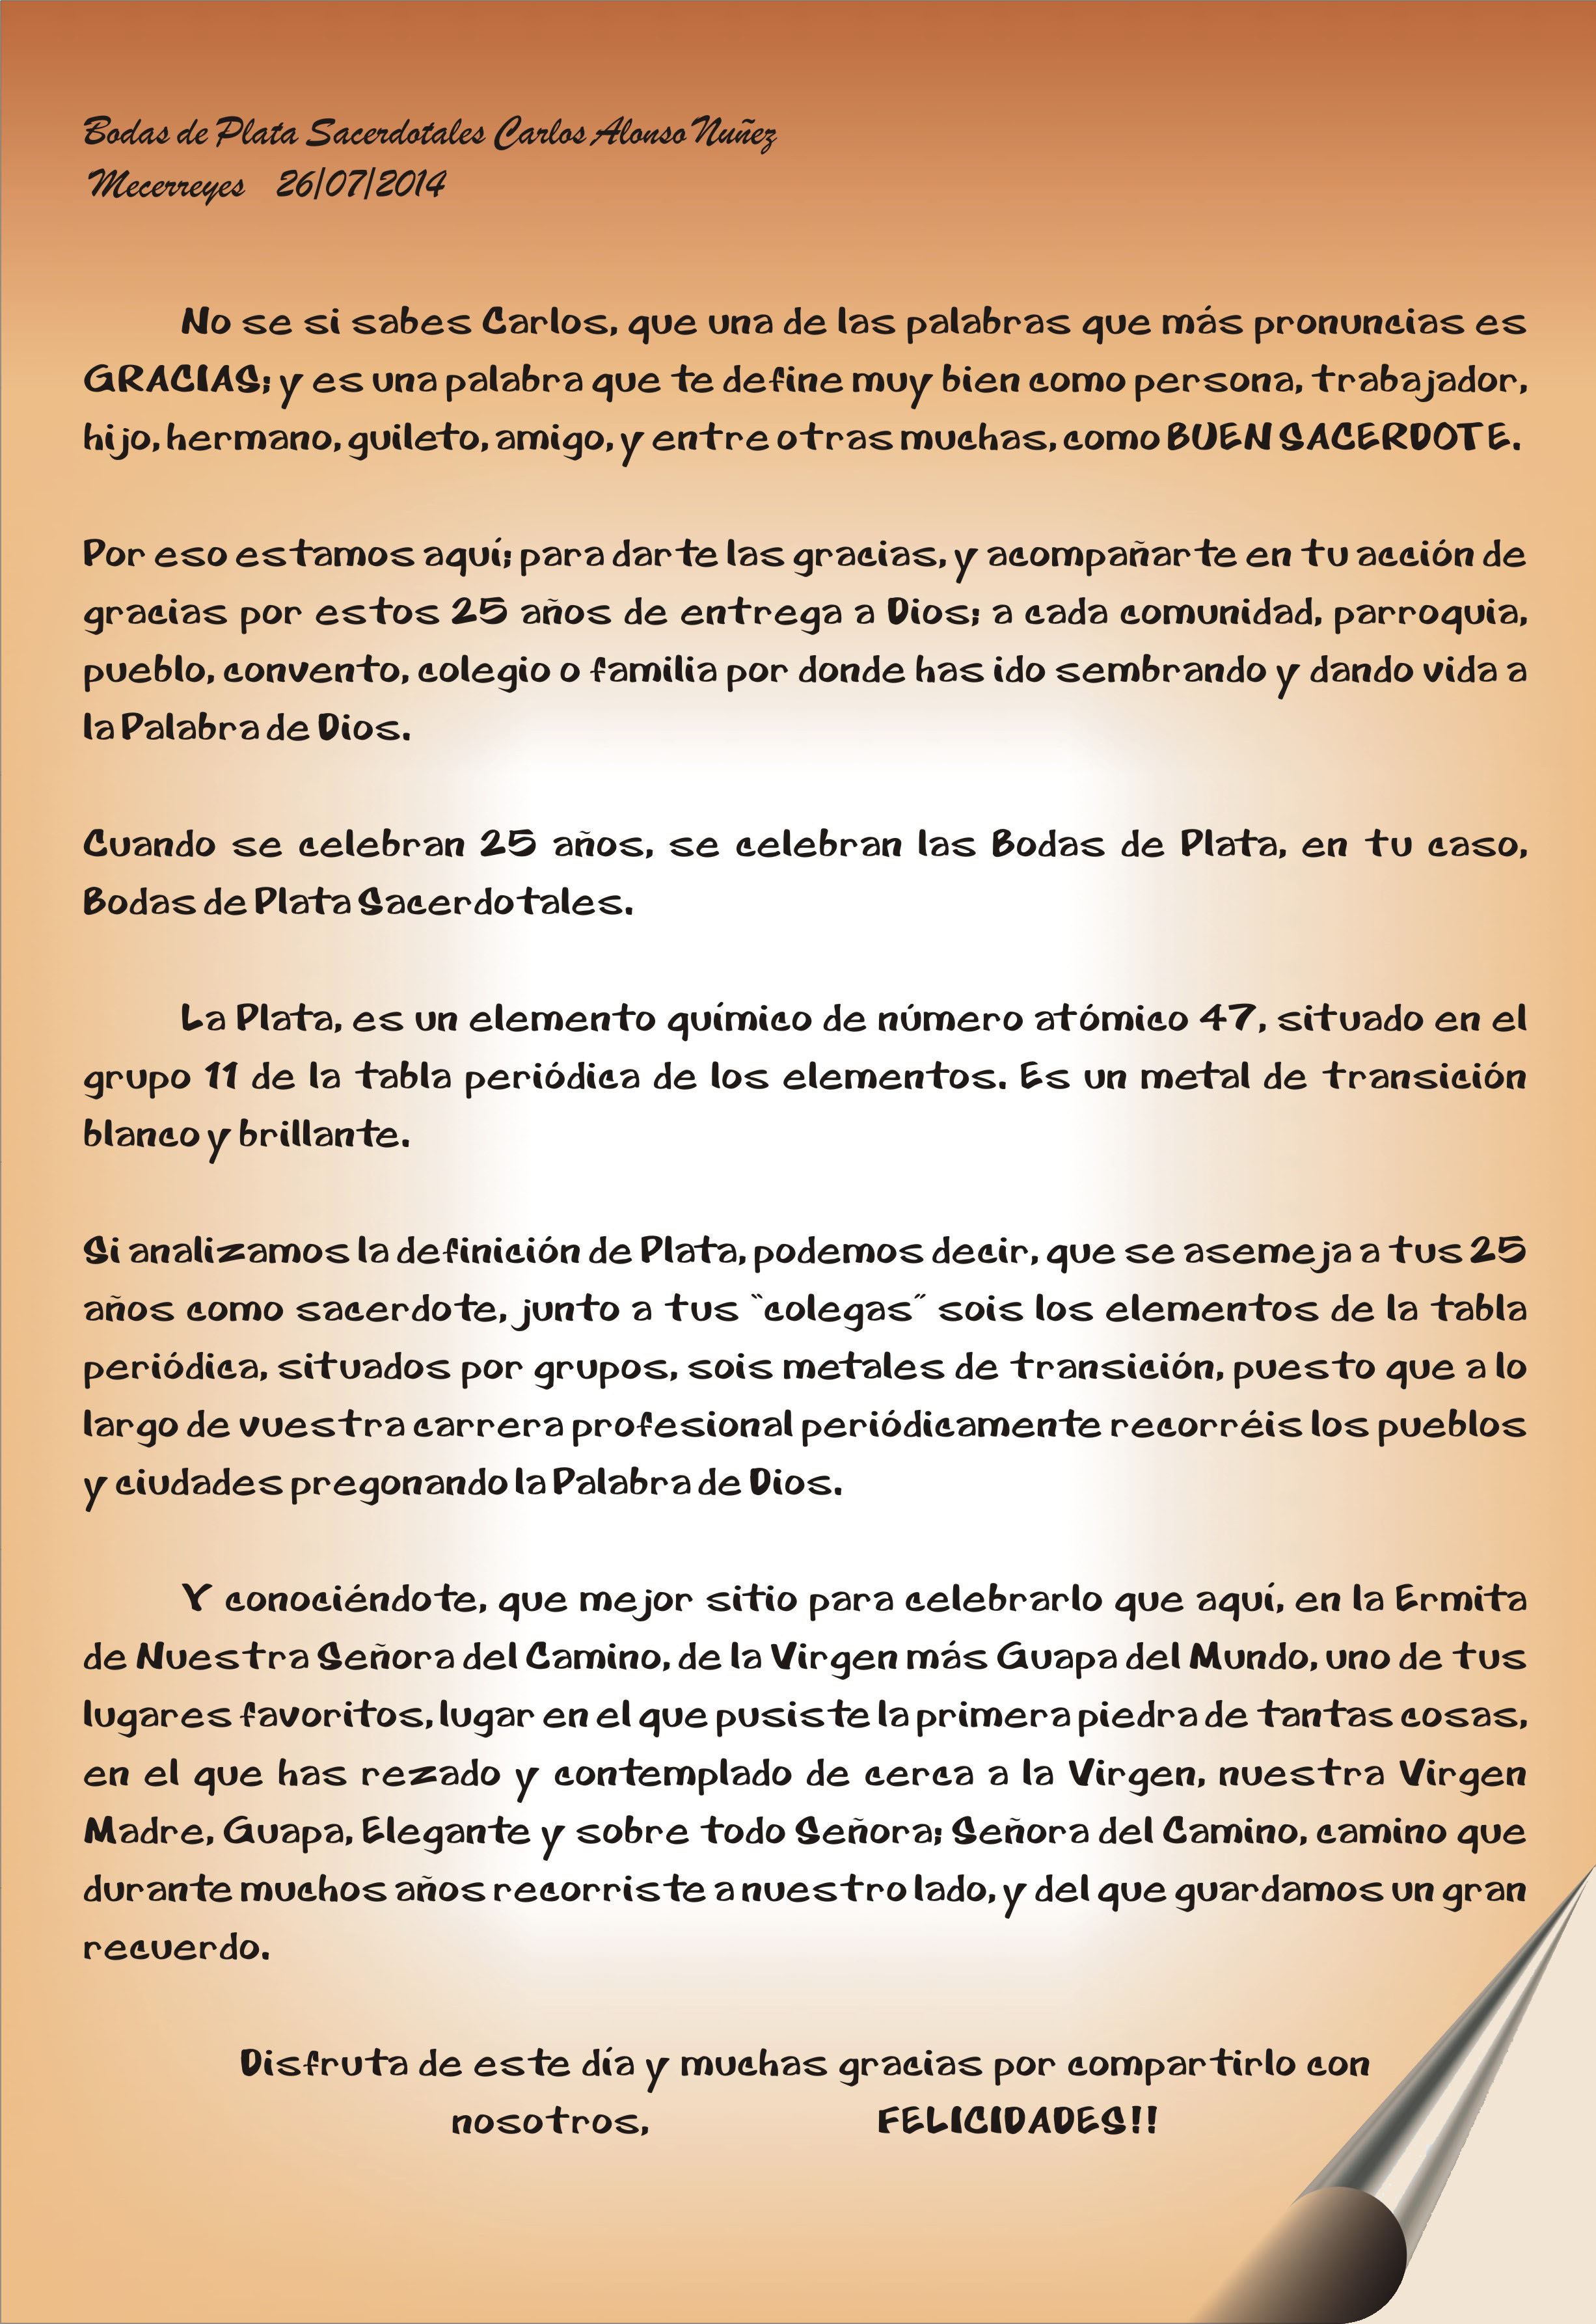 Mecerreyes, Bodas de plata Sacerdotales de Don Carlos 26-07-2014